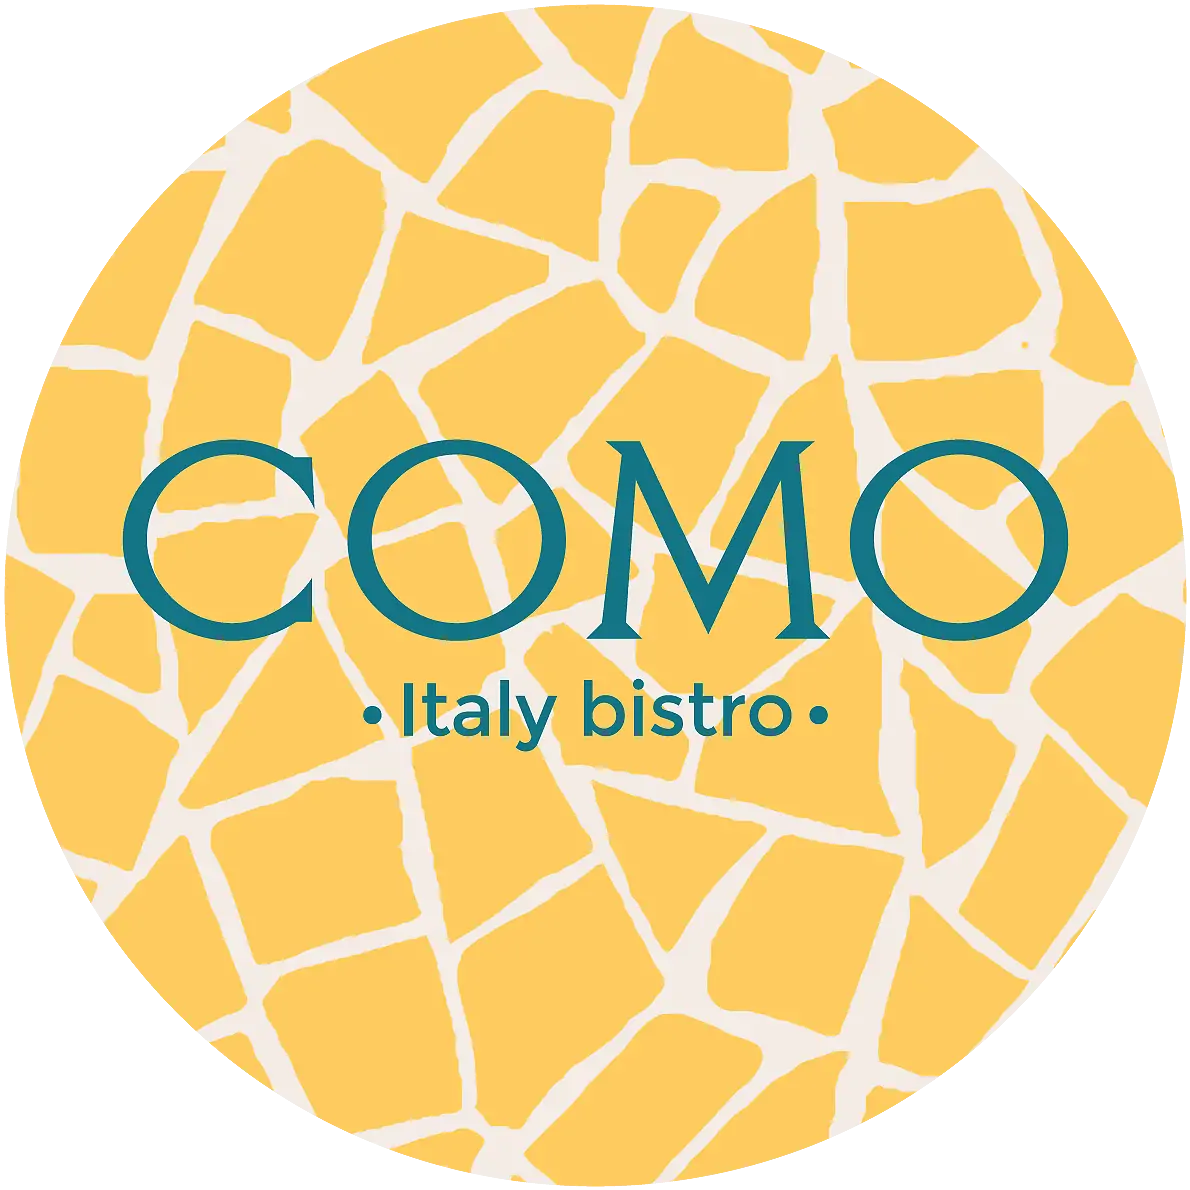 COMO - Italy bistro